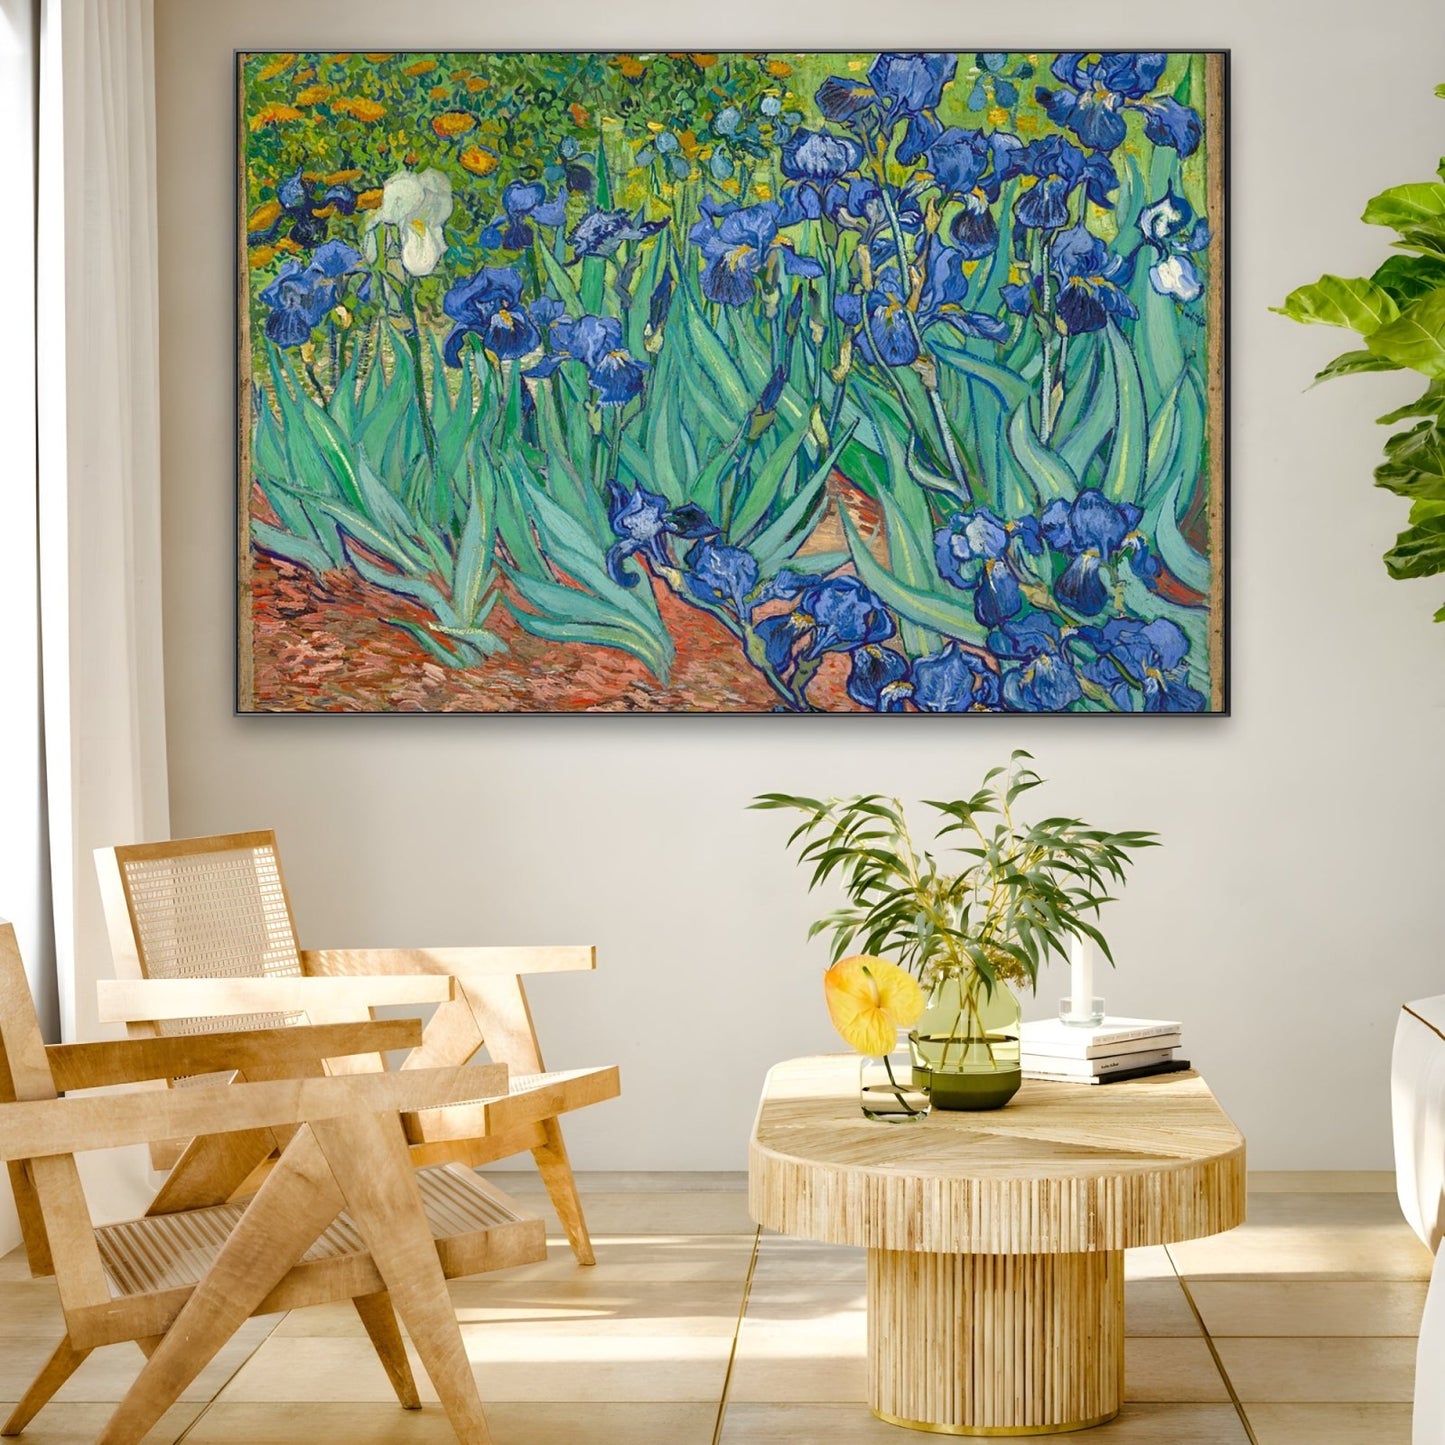 Irises 1889, Vincent Van Gogh